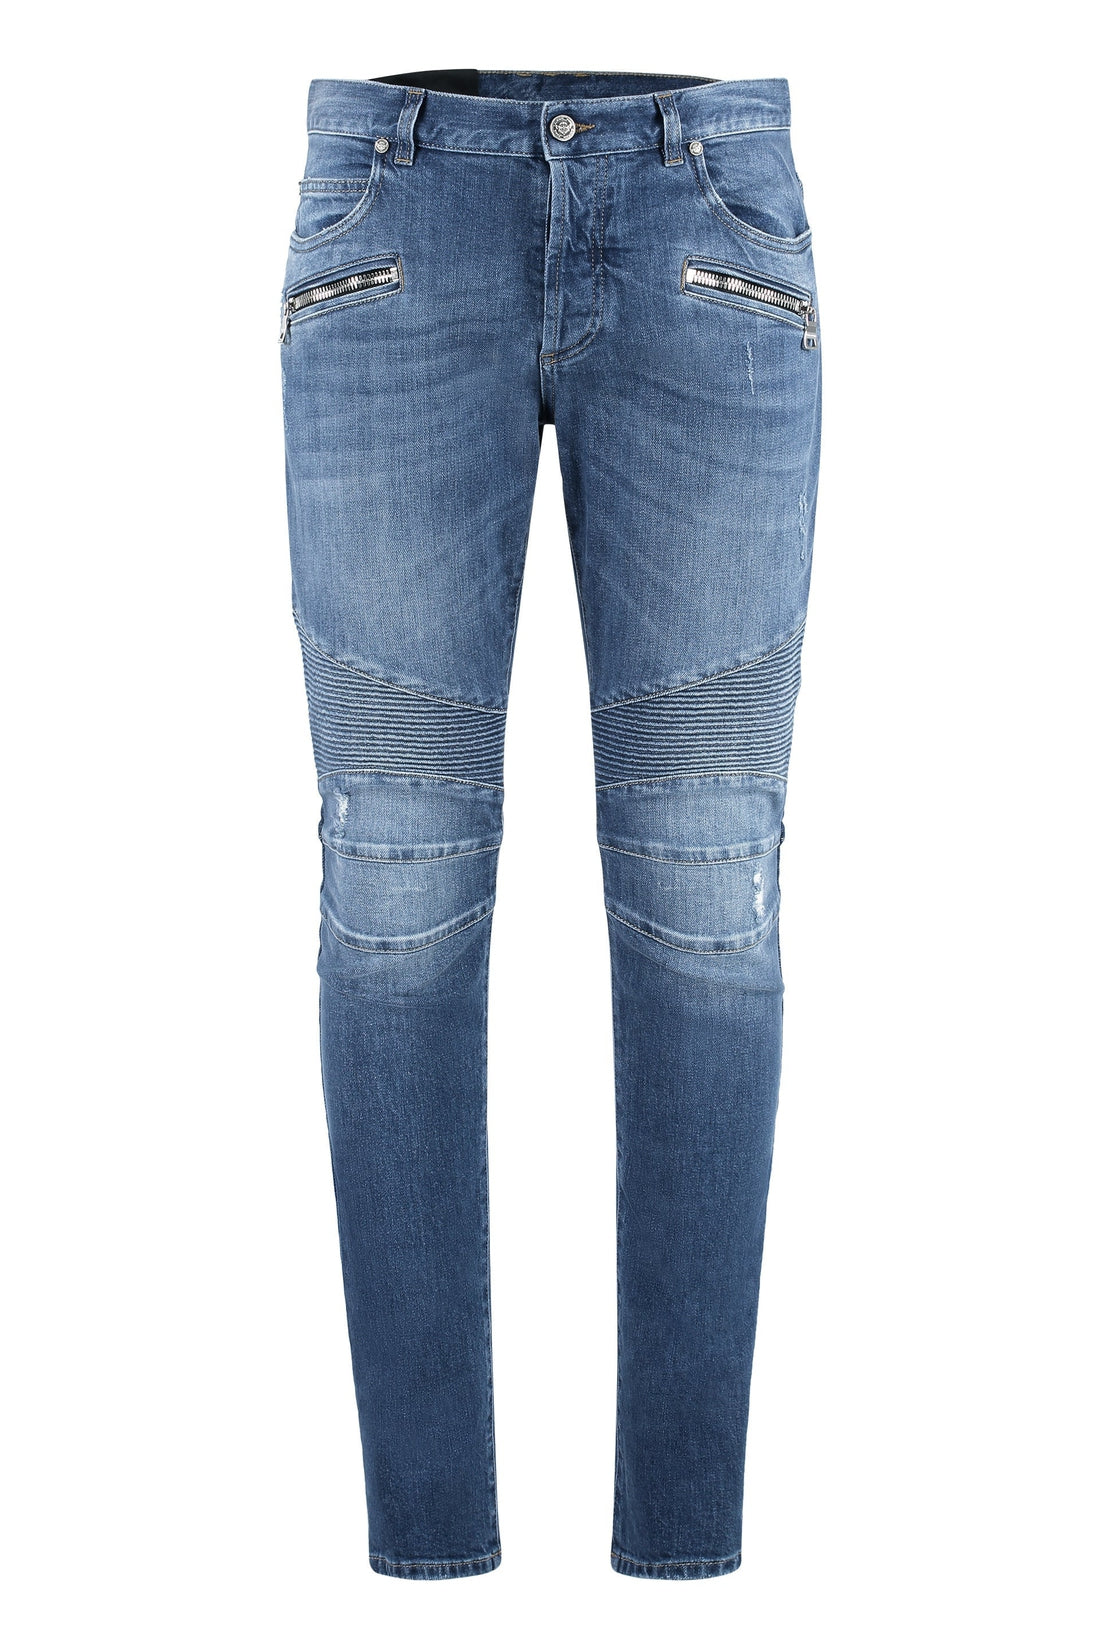 Balmain-OUTLET-SALE-Slim fit jeans-ARCHIVIST